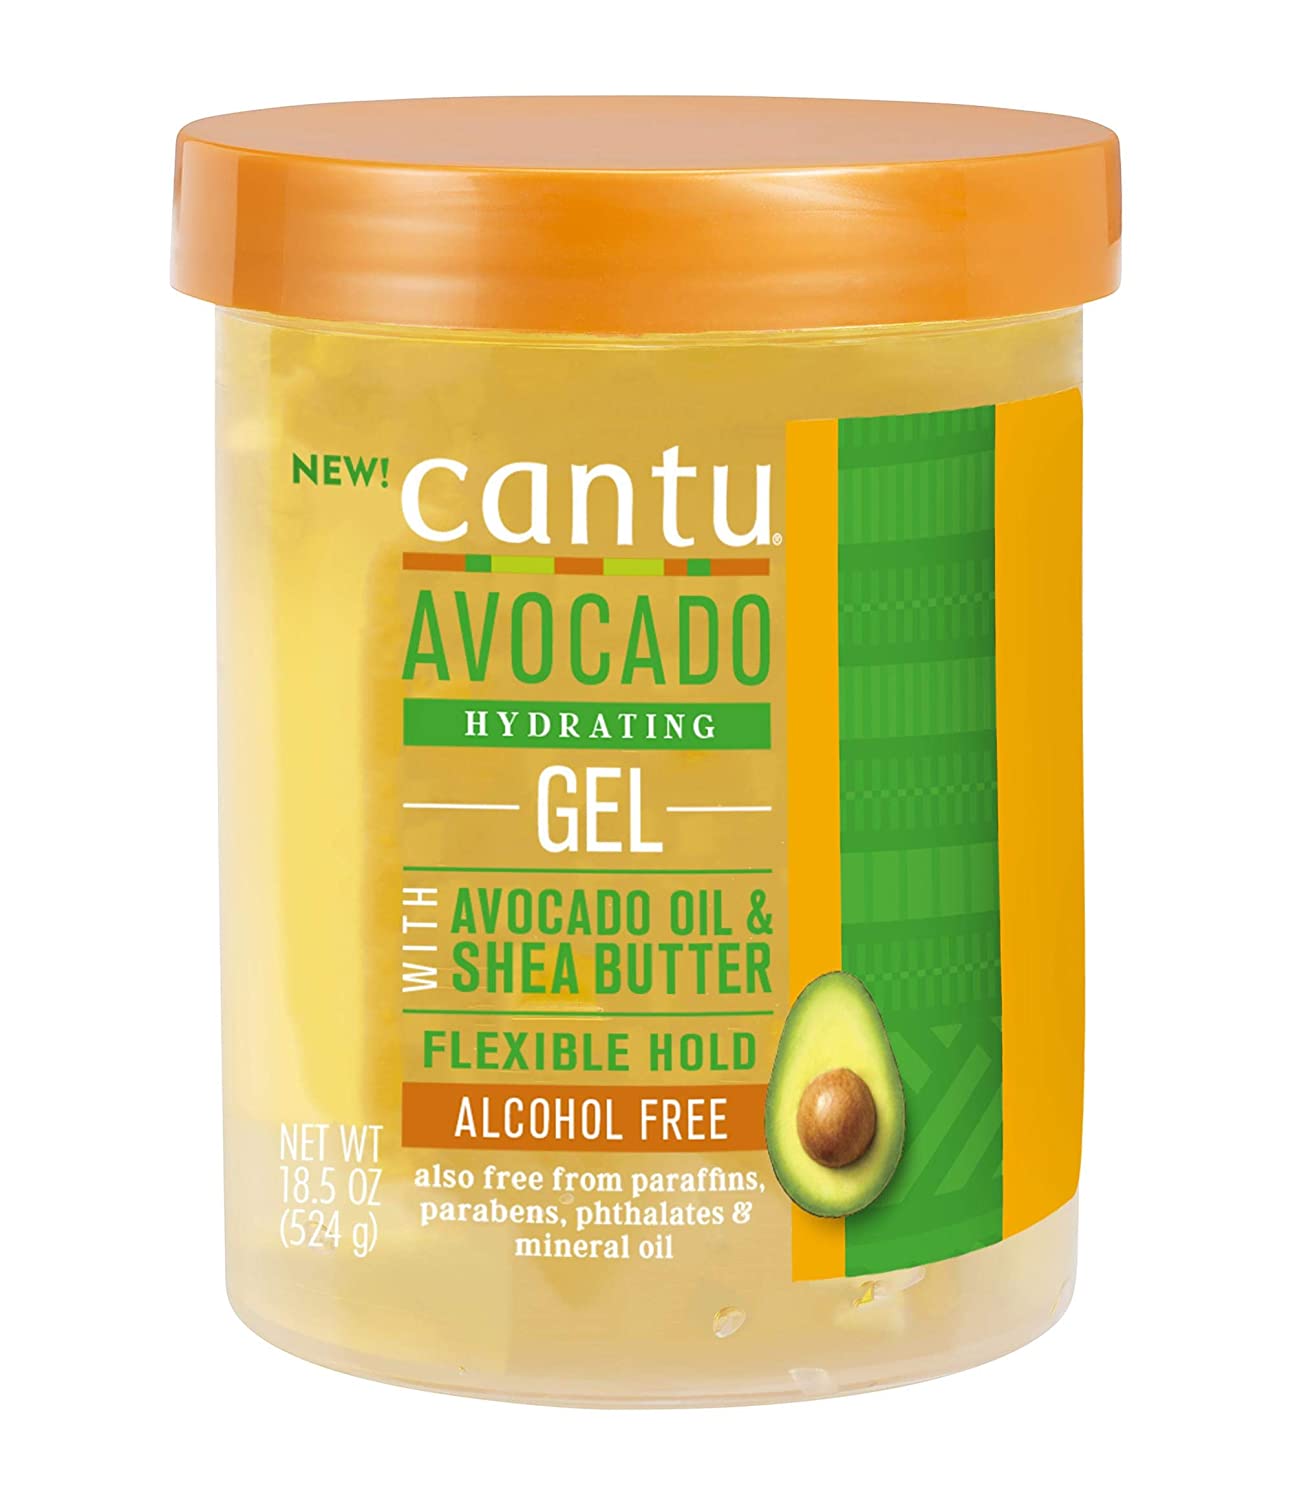 Cantu Avocado Hydrating Gel